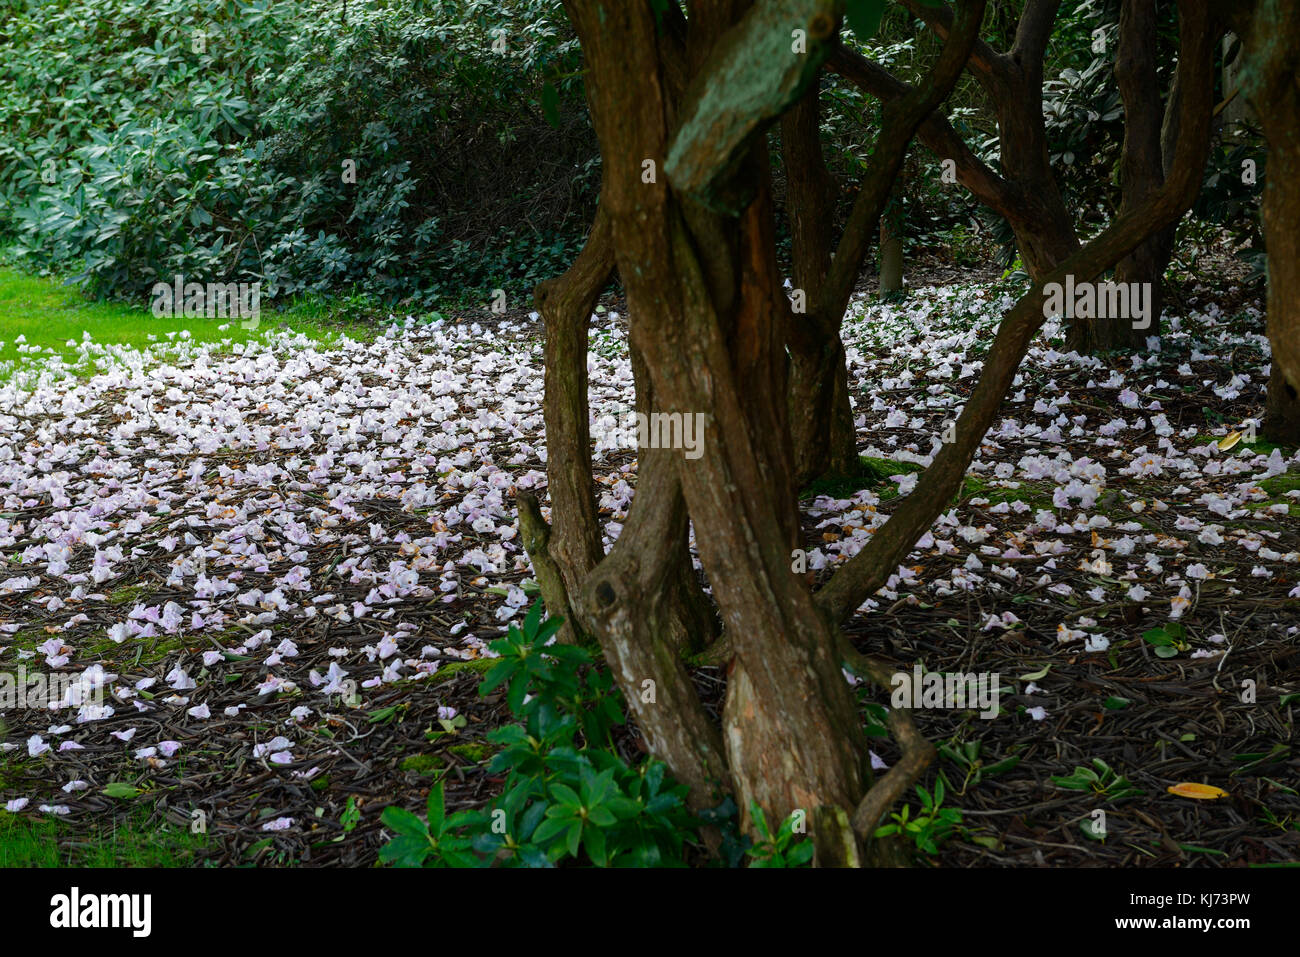 Rhododendron flores, tierra, caído, alfombra, gastado, muertos, carpetting, suelo, cubierta, blanca, flores, flores, Flores de RM Foto de stock